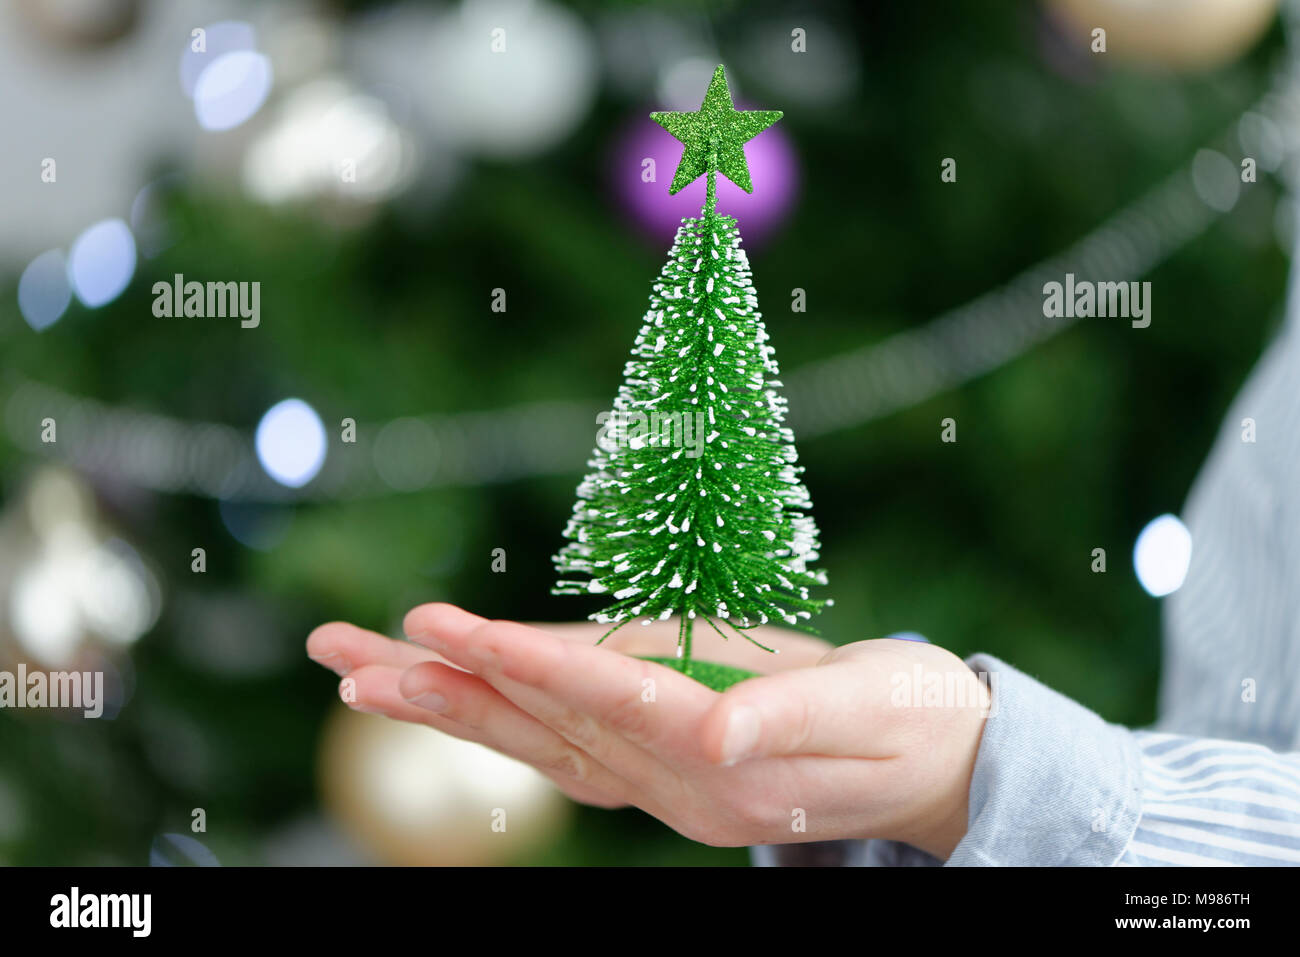 Junge, Kind hält einen kleinen Tannenbaum mit Lichterketten vor dem  Christbaum, Weihnachten, Bayern, Deutschland Stock Photo - Alamy